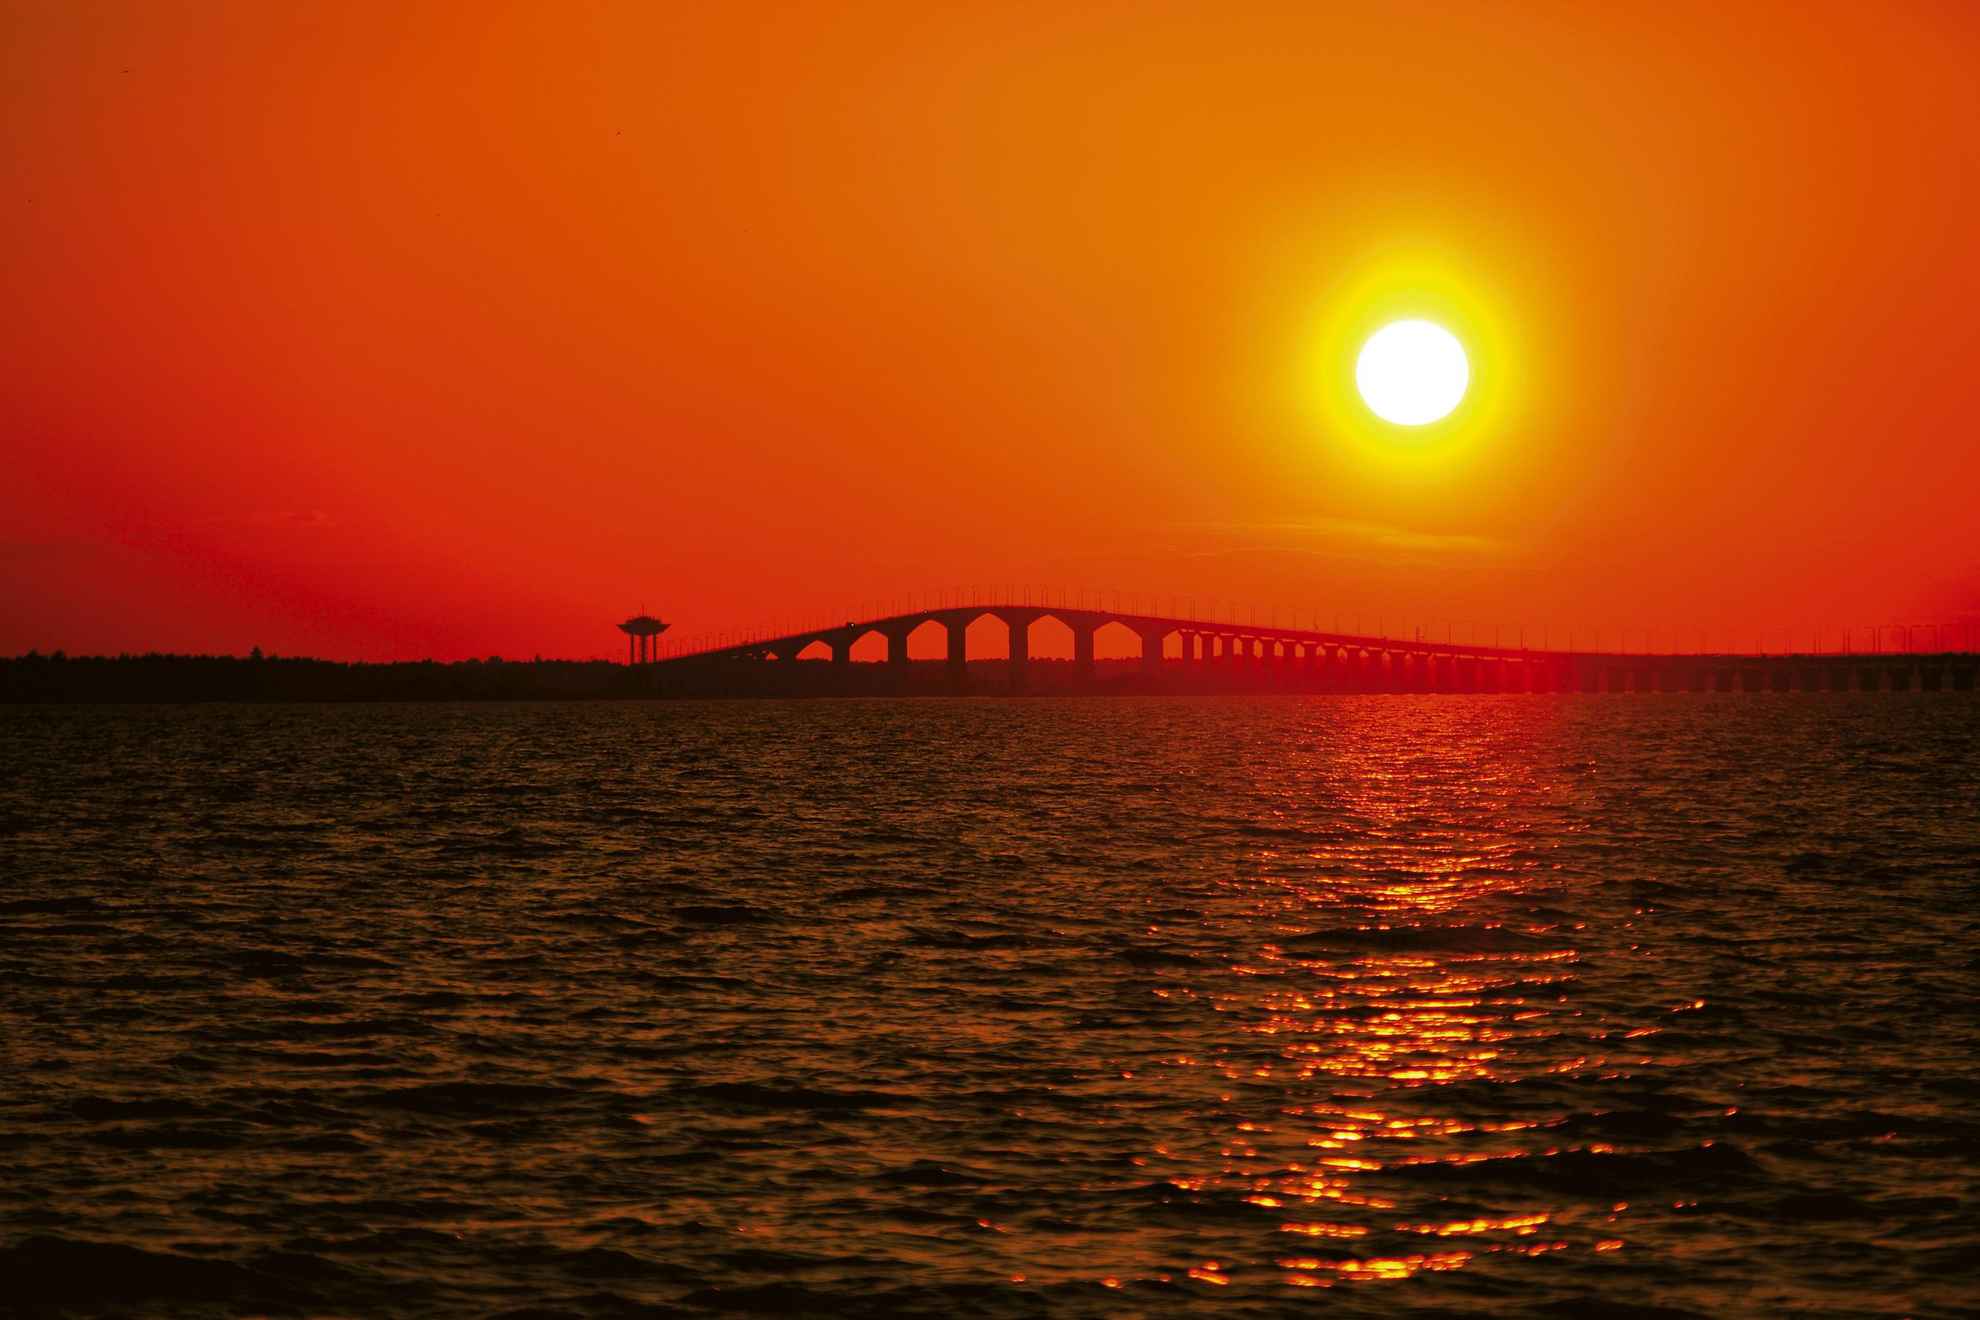 Die Sonne geht über der Brücke Ölandsbron unter. Der Himmel ist orange und die gelbe Sonne macht eine Sonnenspiegelung im Wasser.